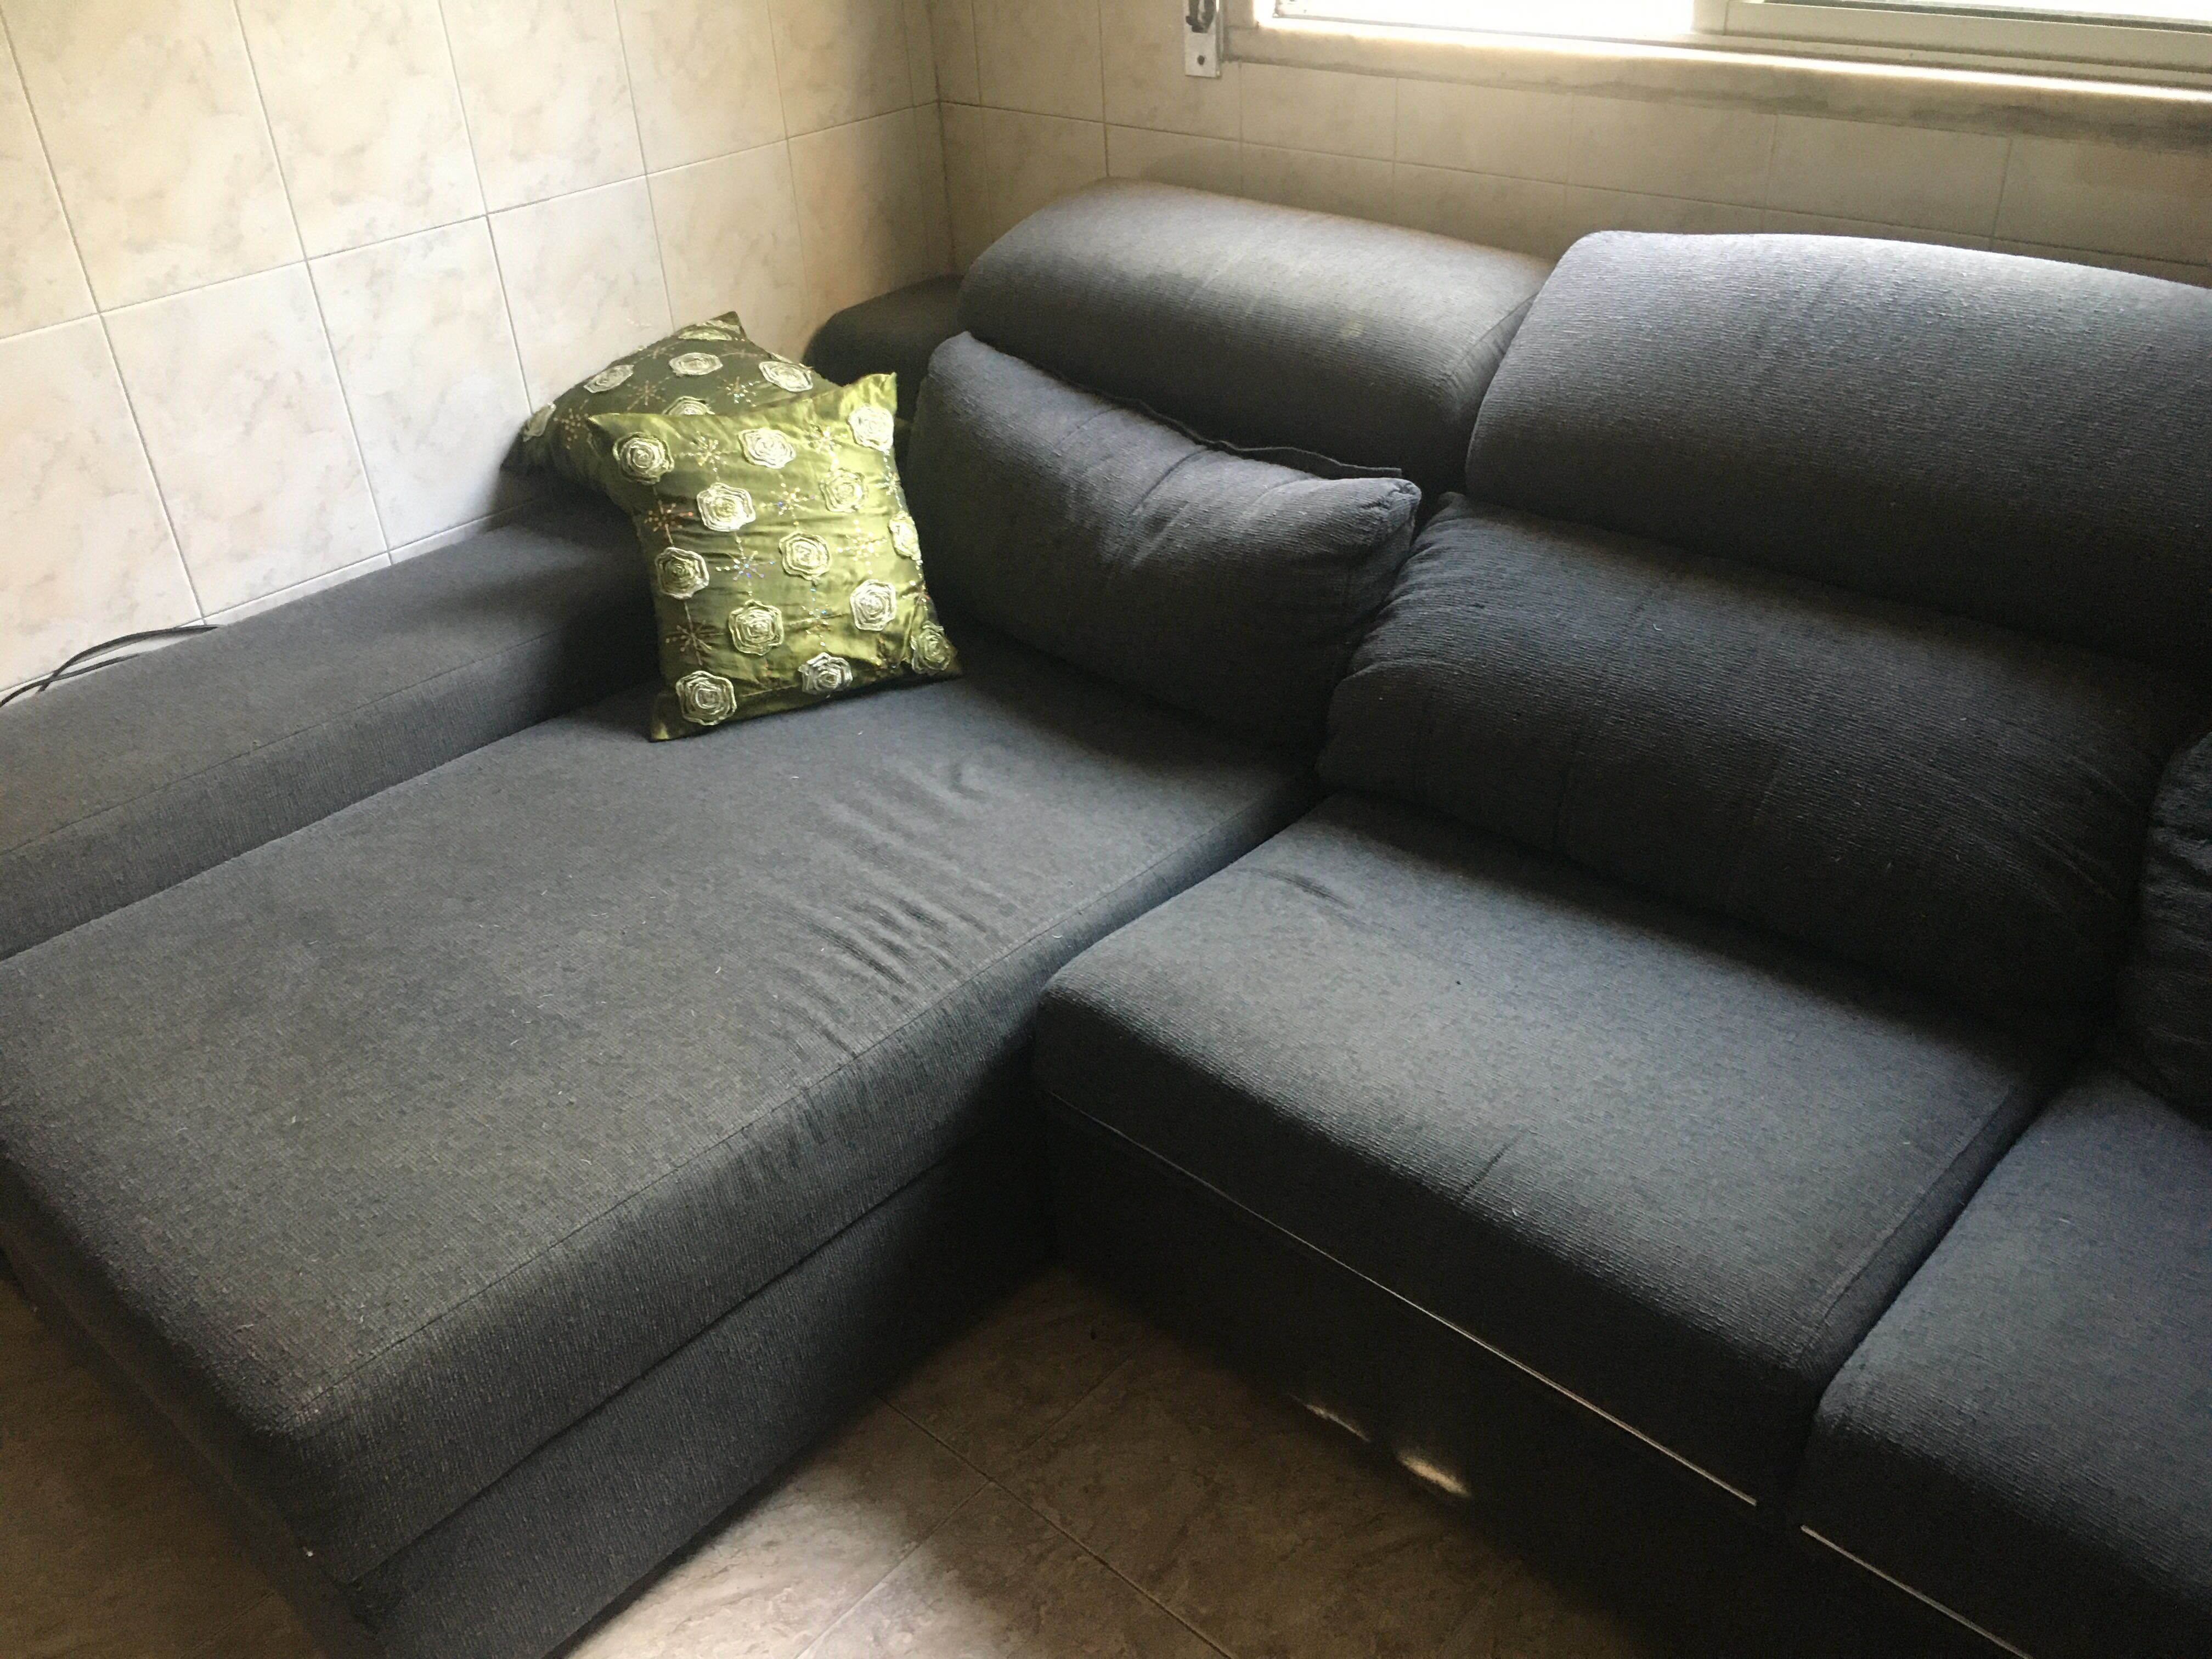 Higienização de colchão e sofás